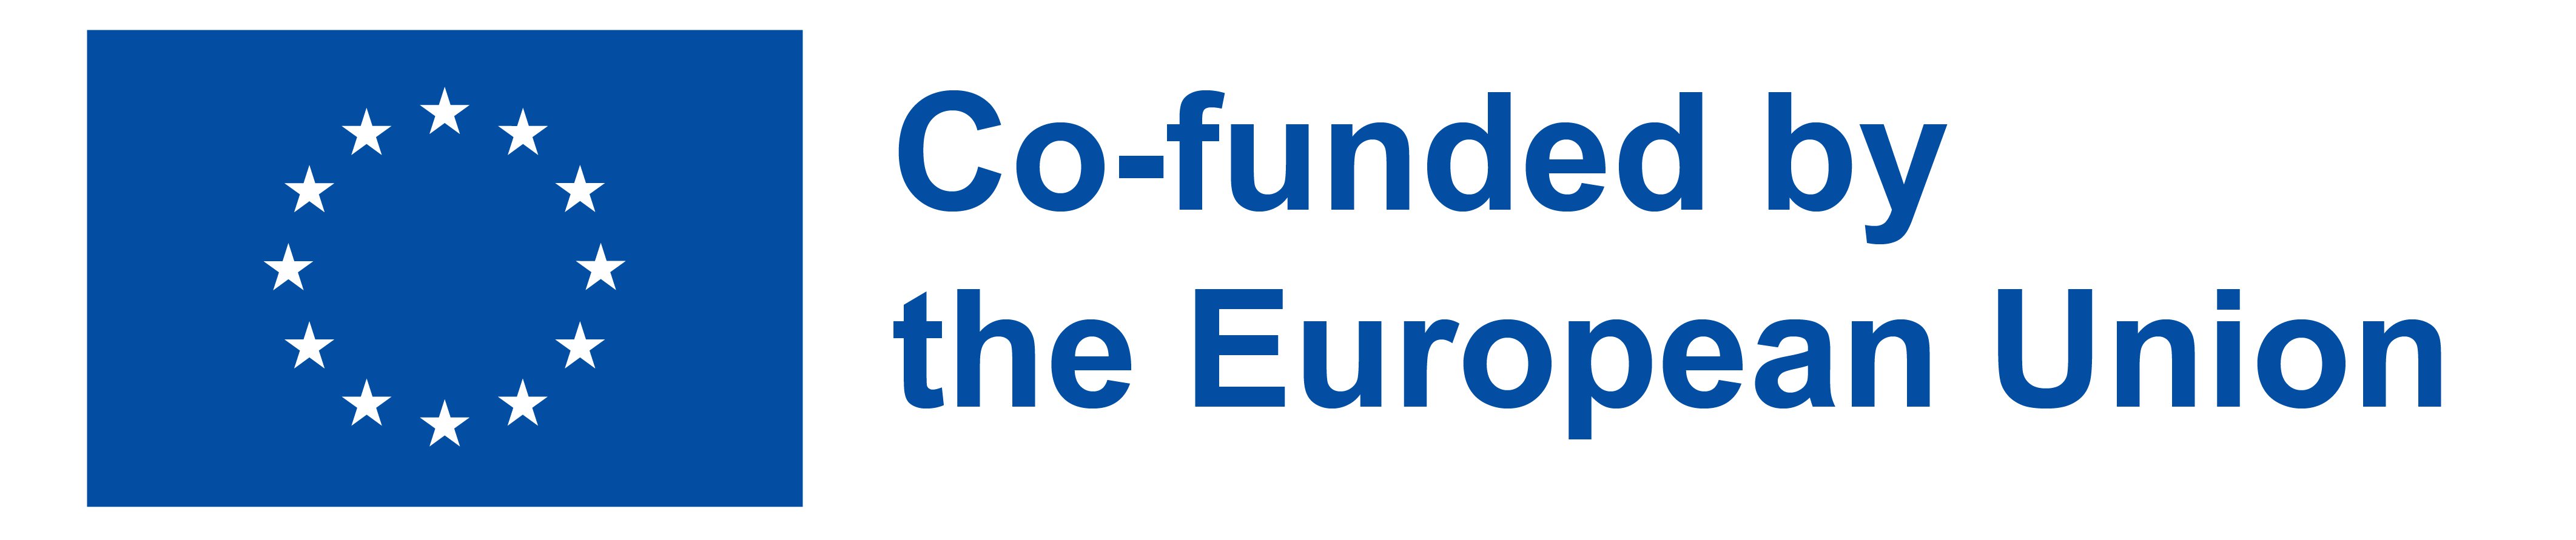 EN Co-funded by the EU_PANTONE.jpg